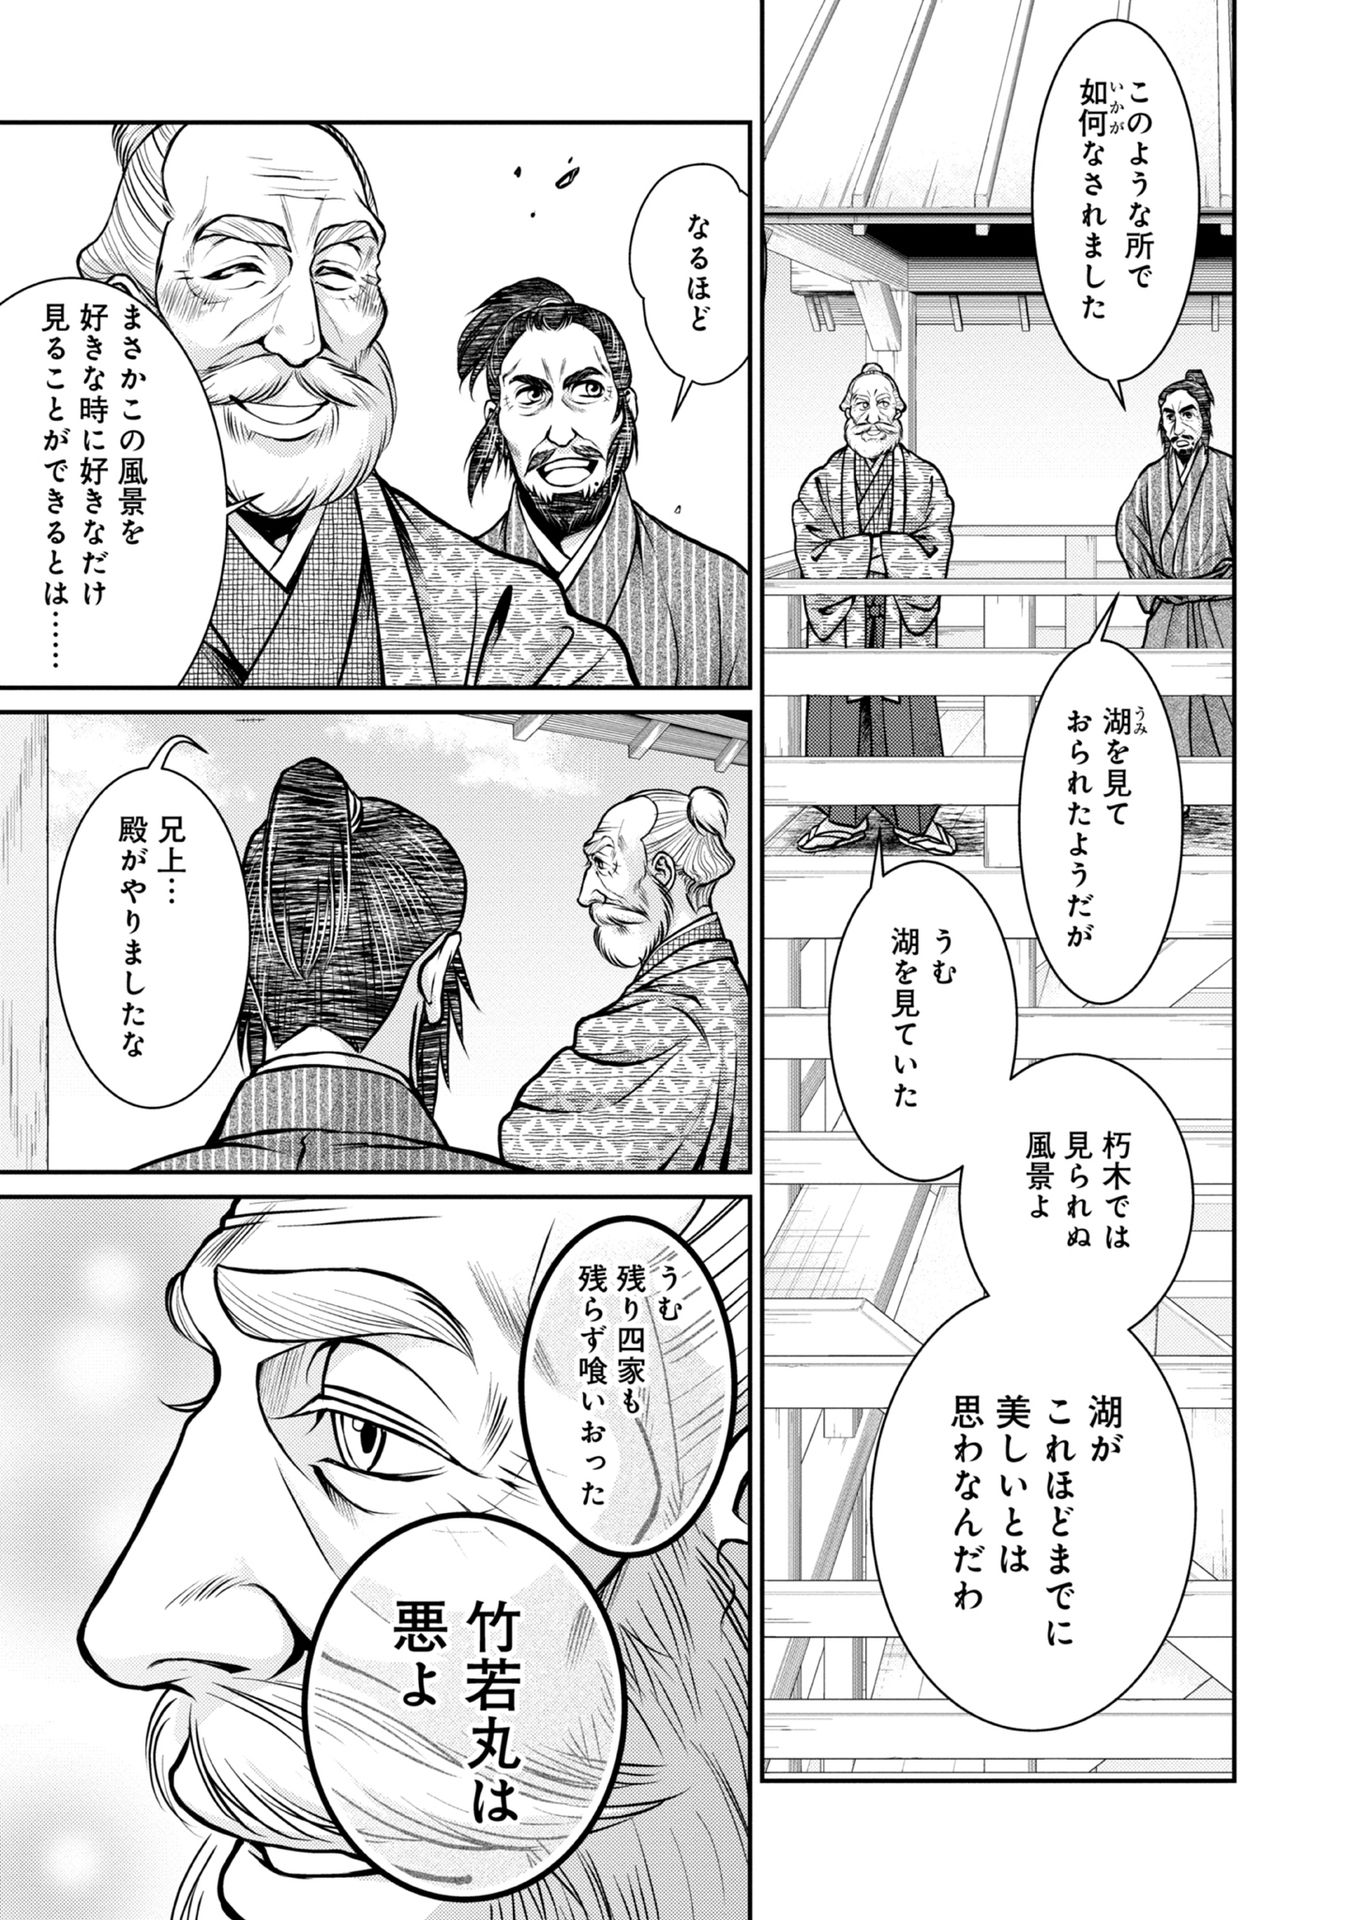 Afumi no Umi – Minamo ga Yureru Toki - Chapter 6 - Page 21